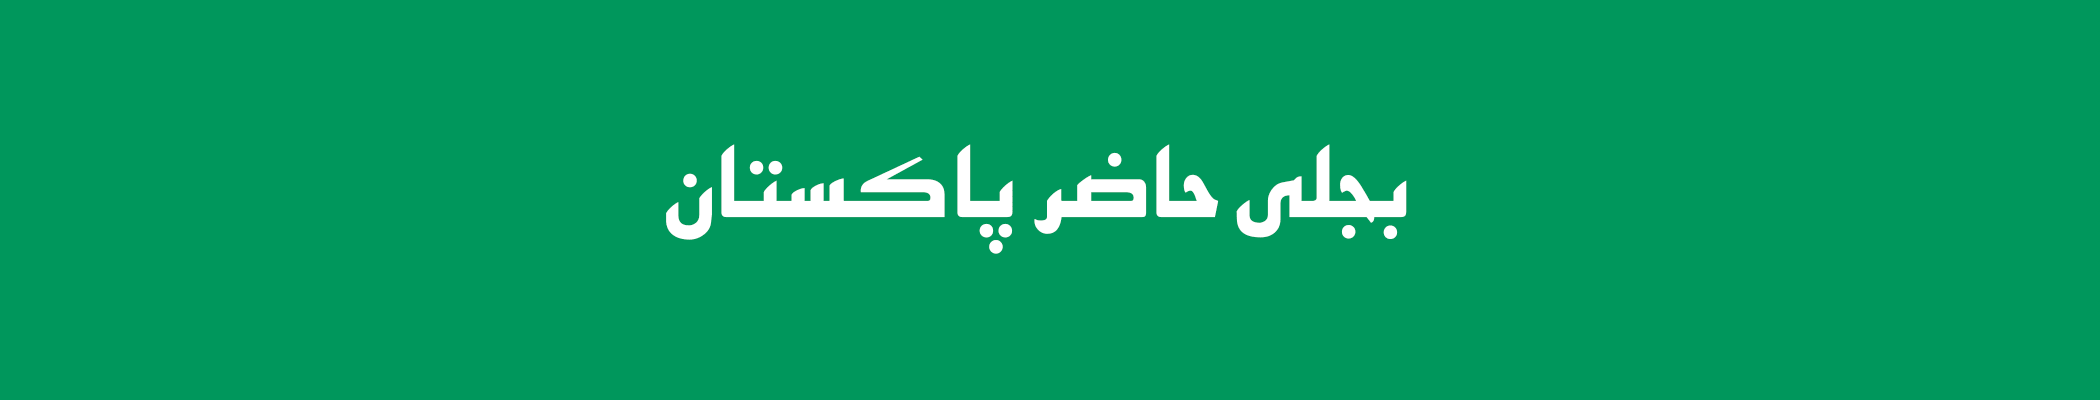 Bijli Haazir Pakistan